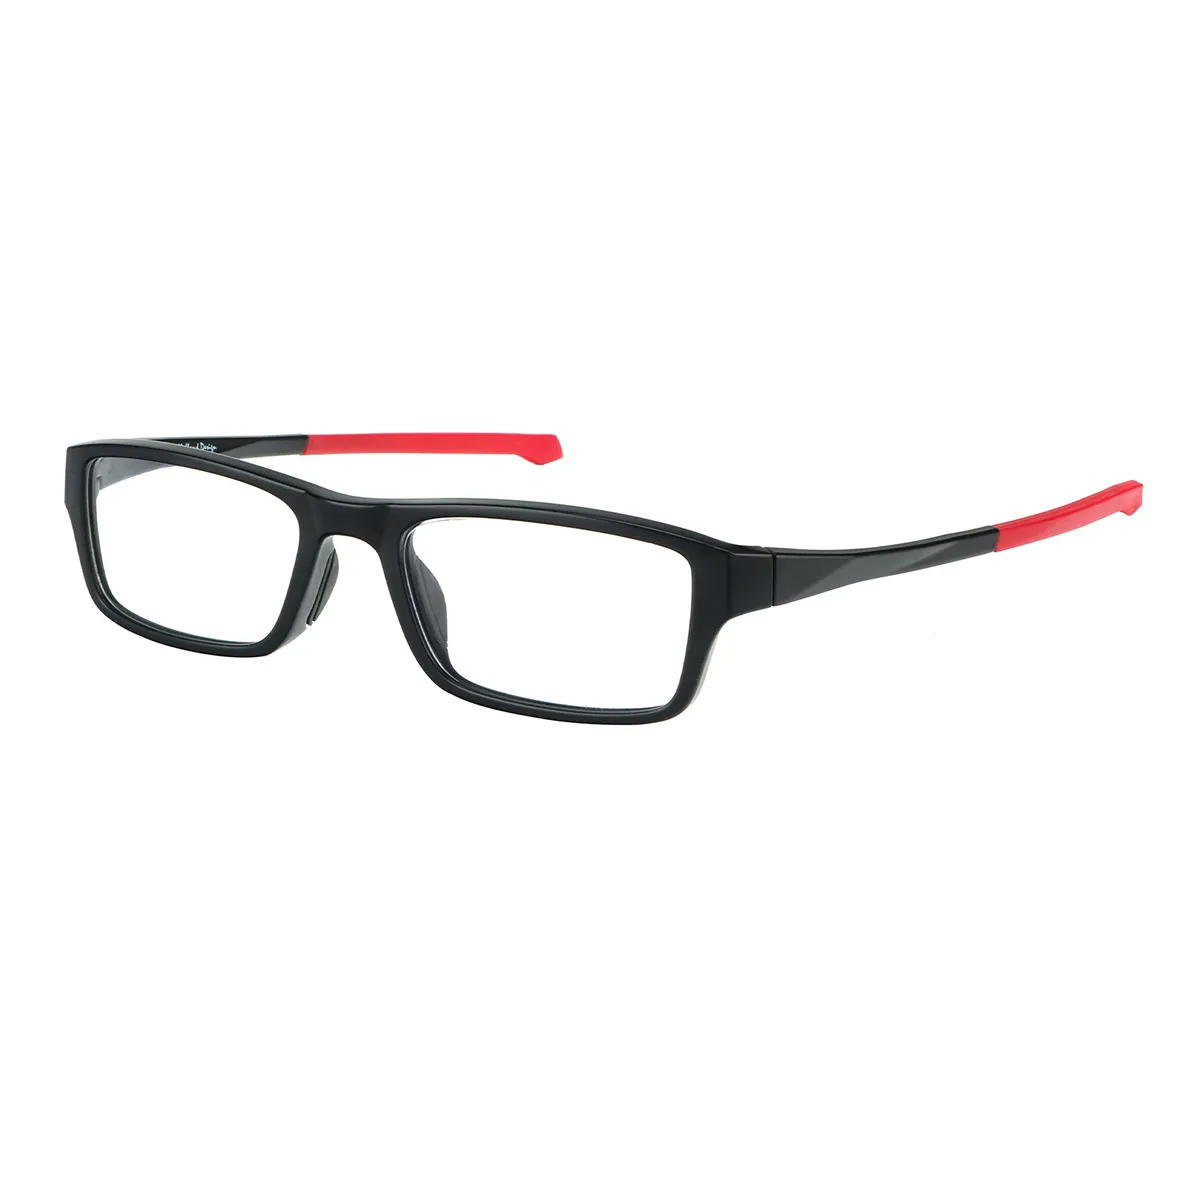 Sports Rectangle Black-Orange Eyeglasses for Women & Men